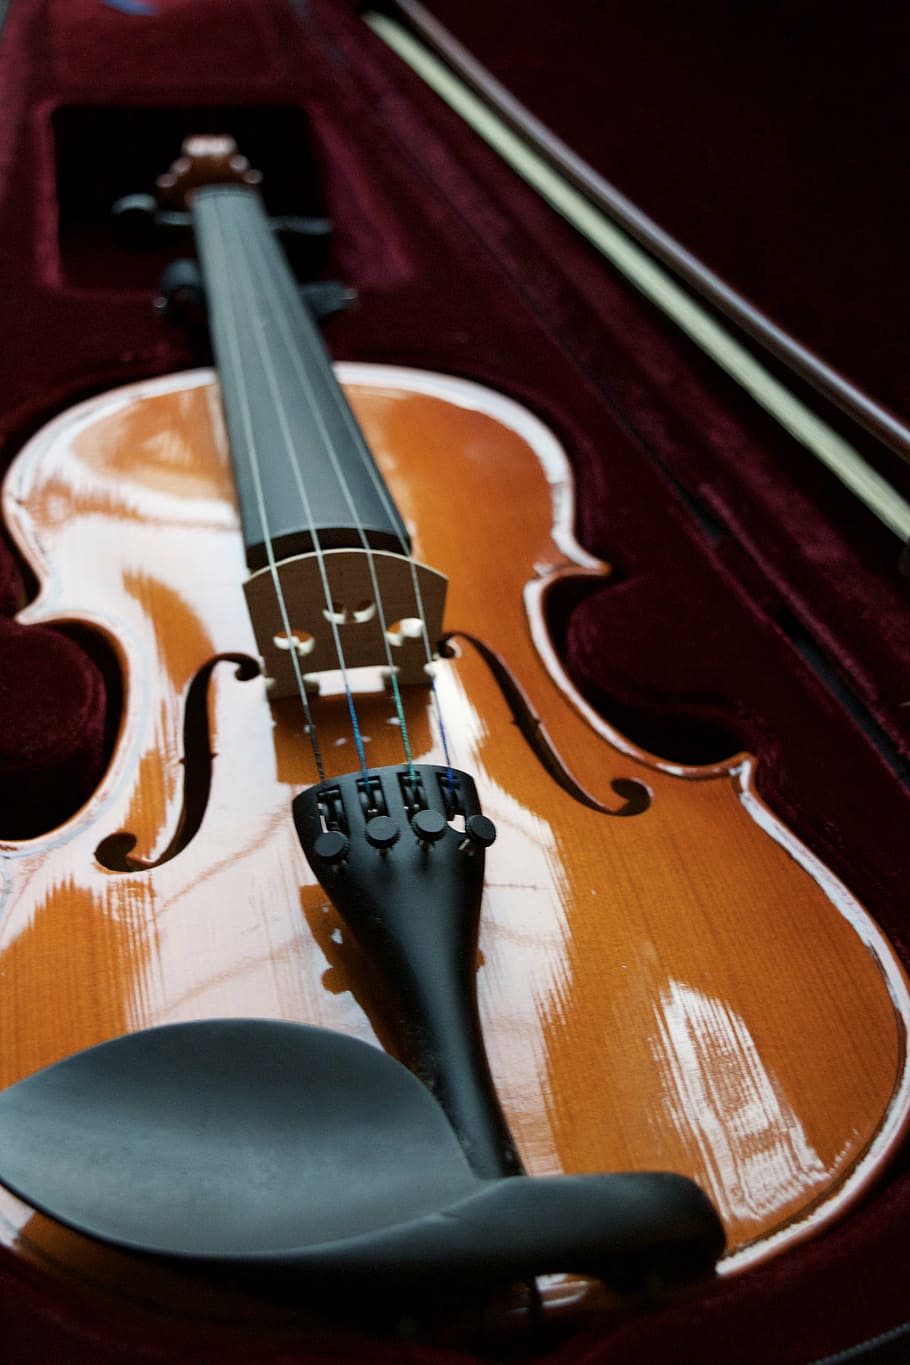 brown, violin, inside, case, velvet, string, bow, wooden, music, musical Instrument